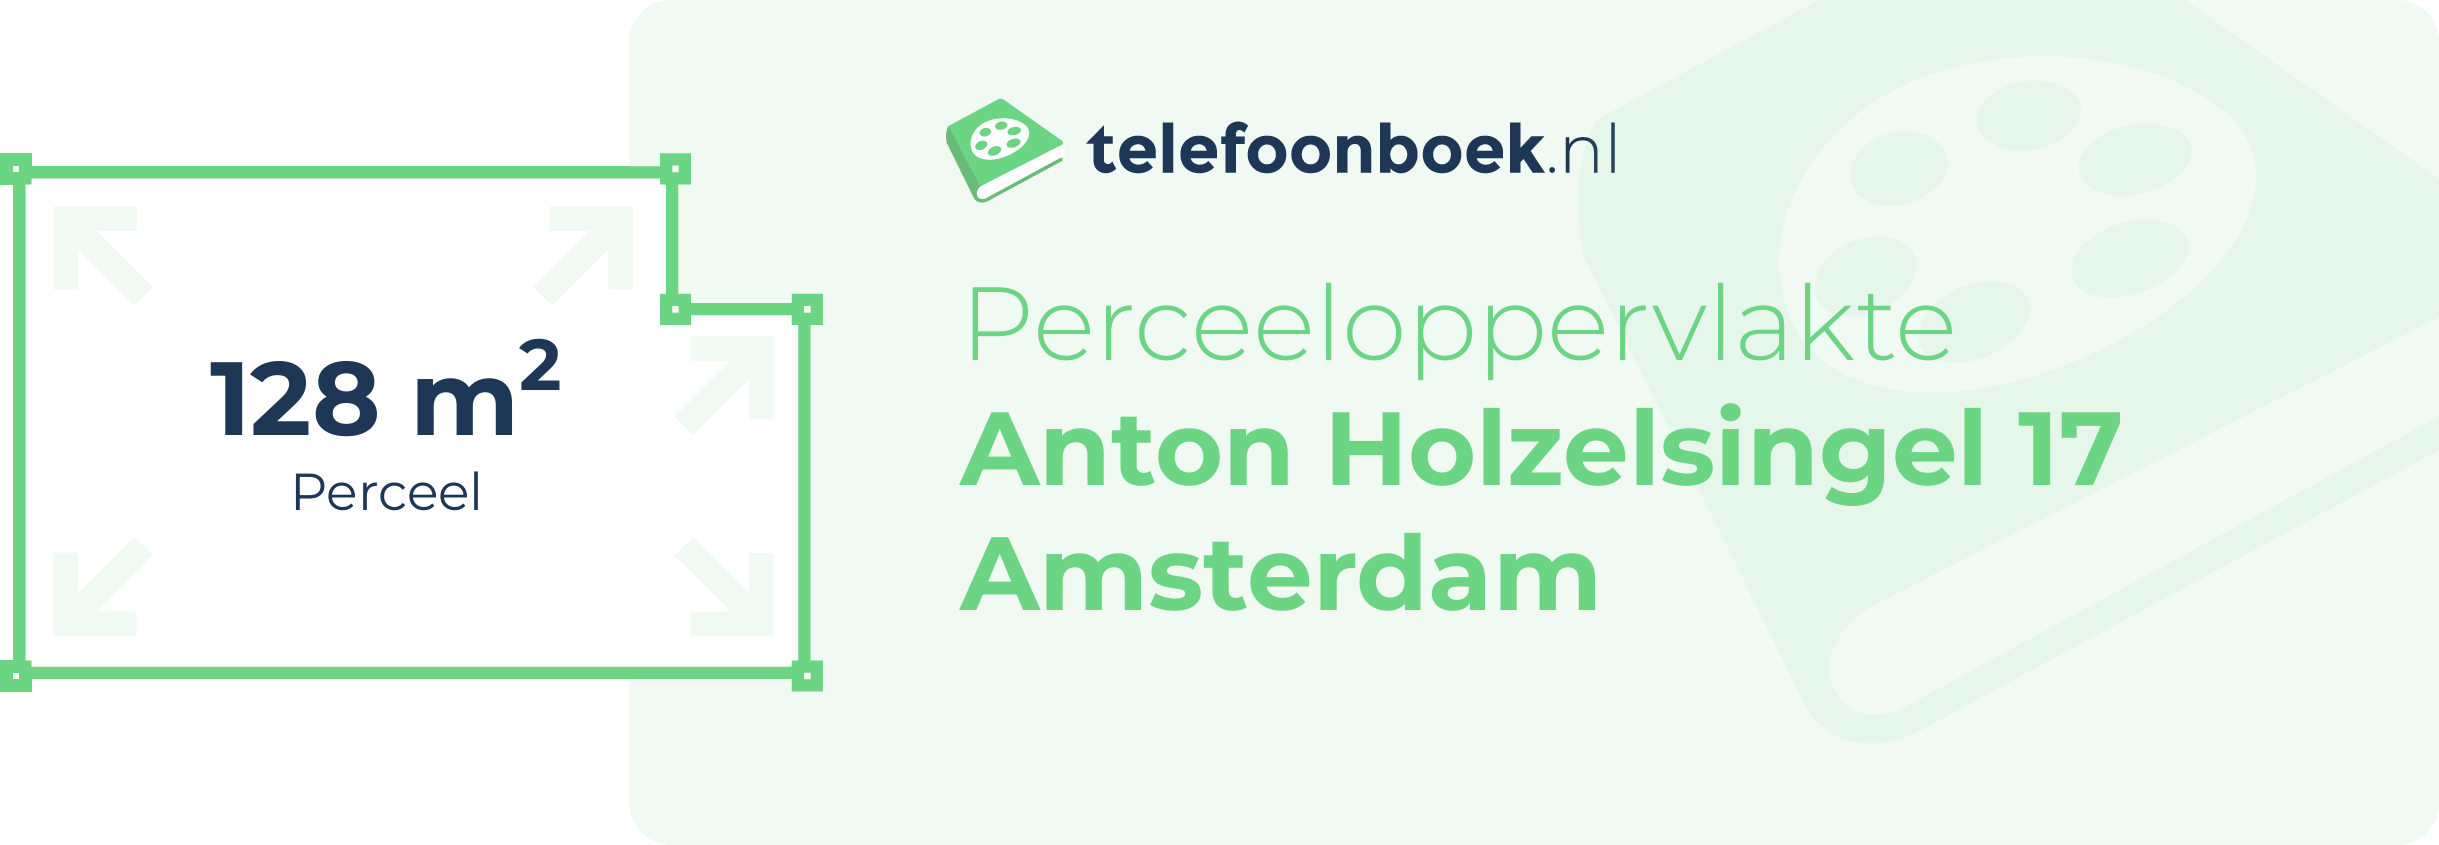 Perceeloppervlakte Anton Holzelsingel 17 Amsterdam